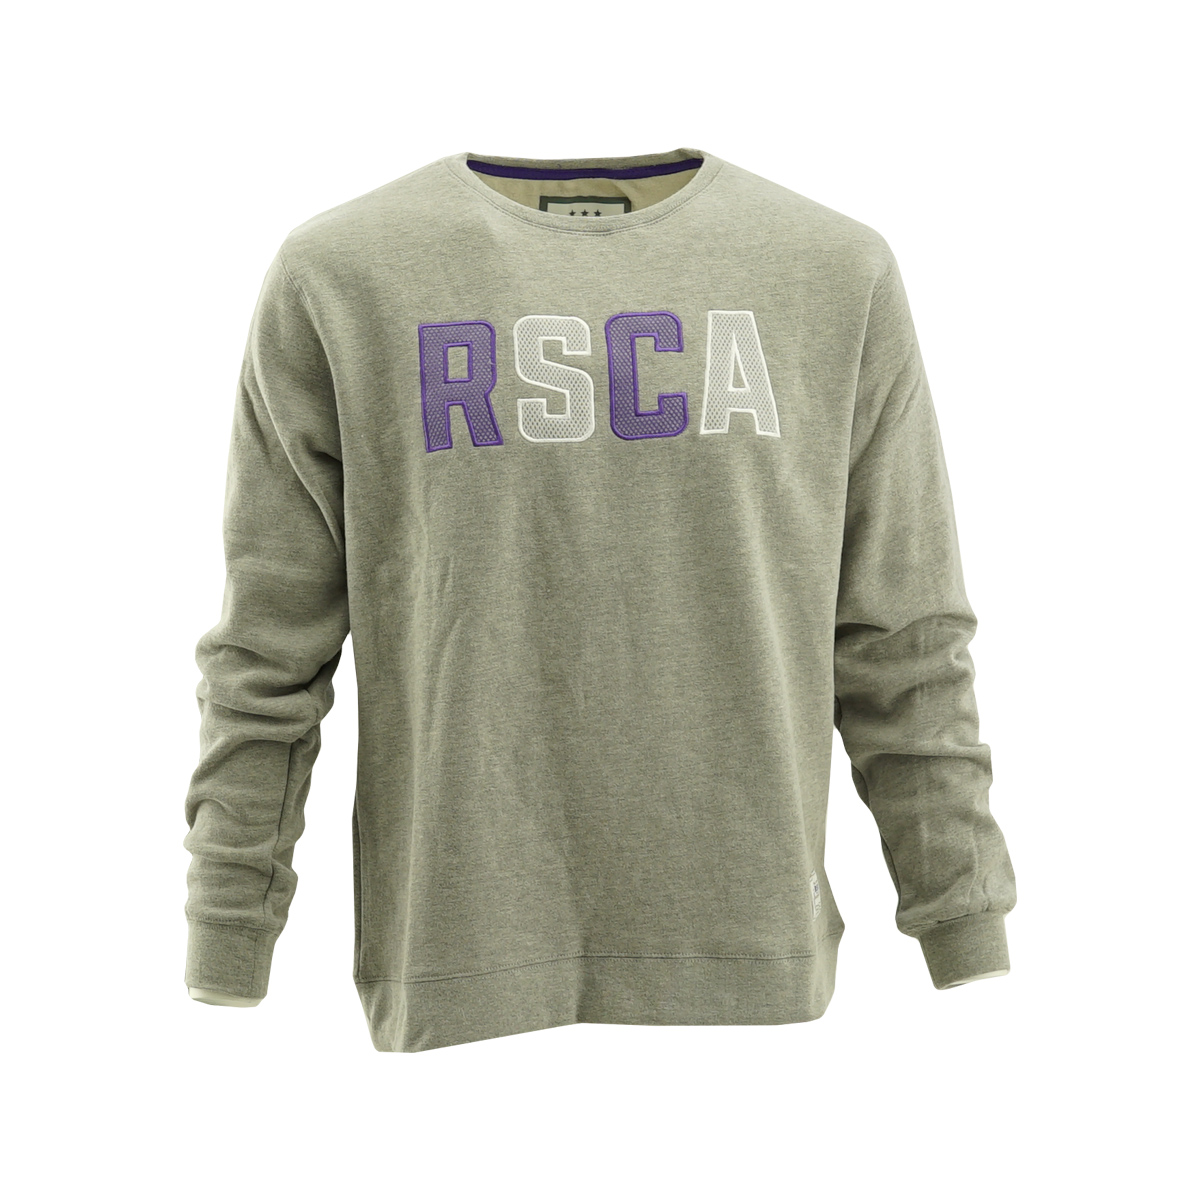 Sweater Men RSCA Purple/White